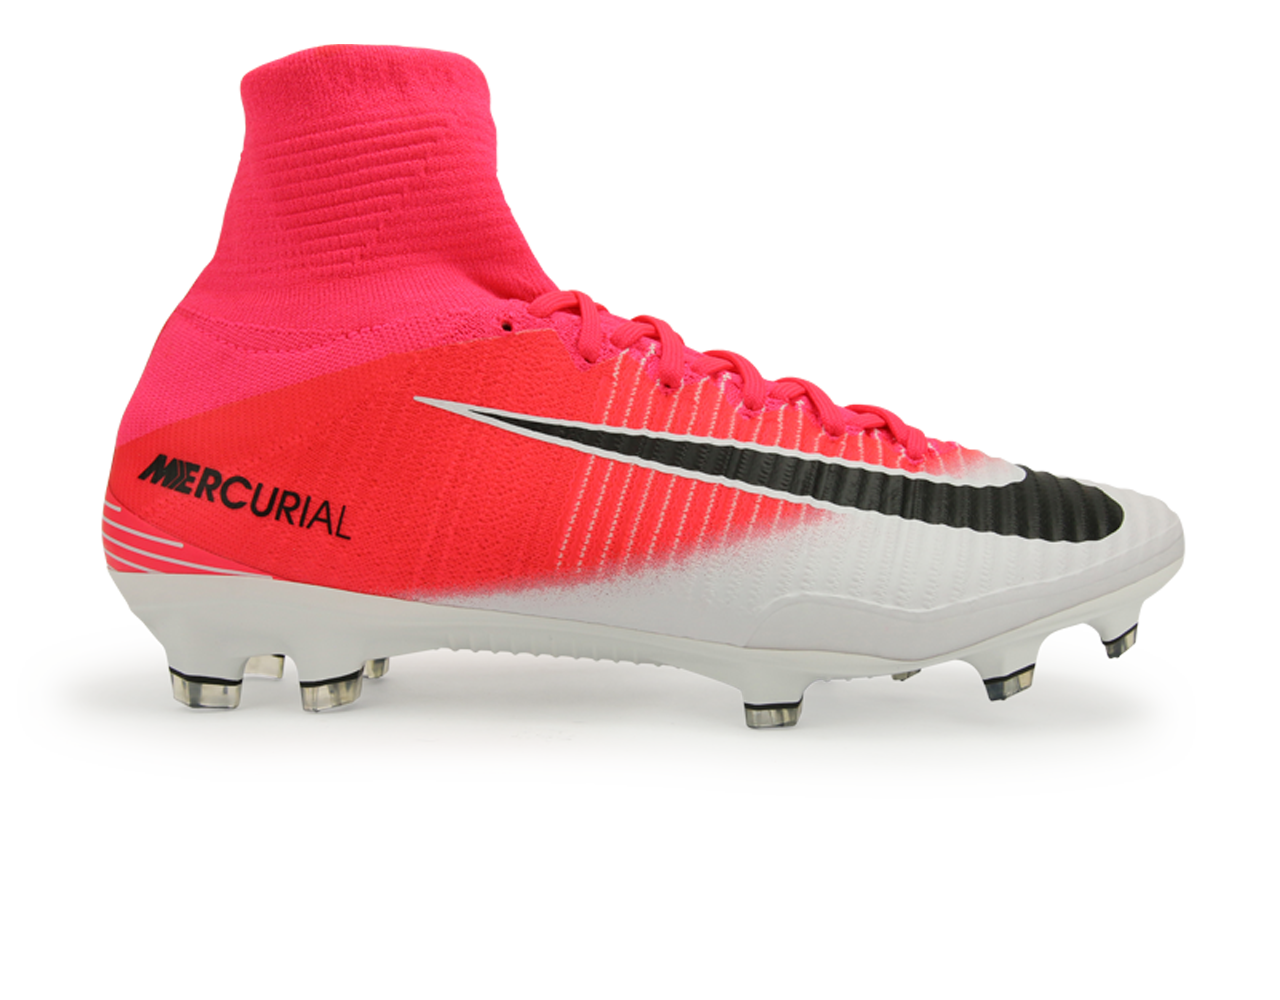 Nike Mercurial Superfly V Racer Azteca Soccer